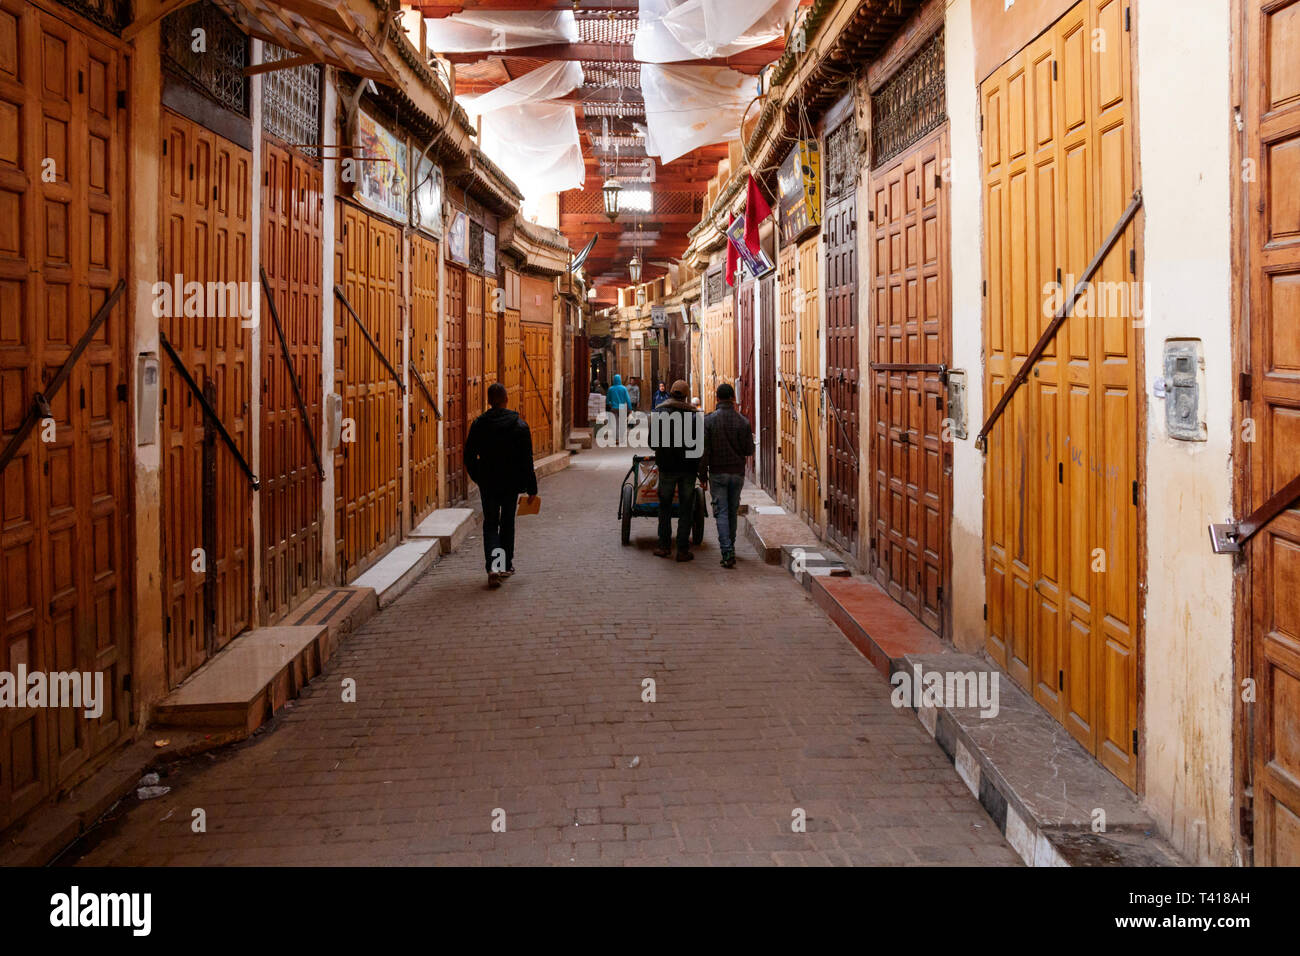 Unbekannte Menschen zu Fuß in der alten Medina entlang der verschlossenen Türen der zahlreiche Geschäfte. Fez, Marokko. Stockfoto